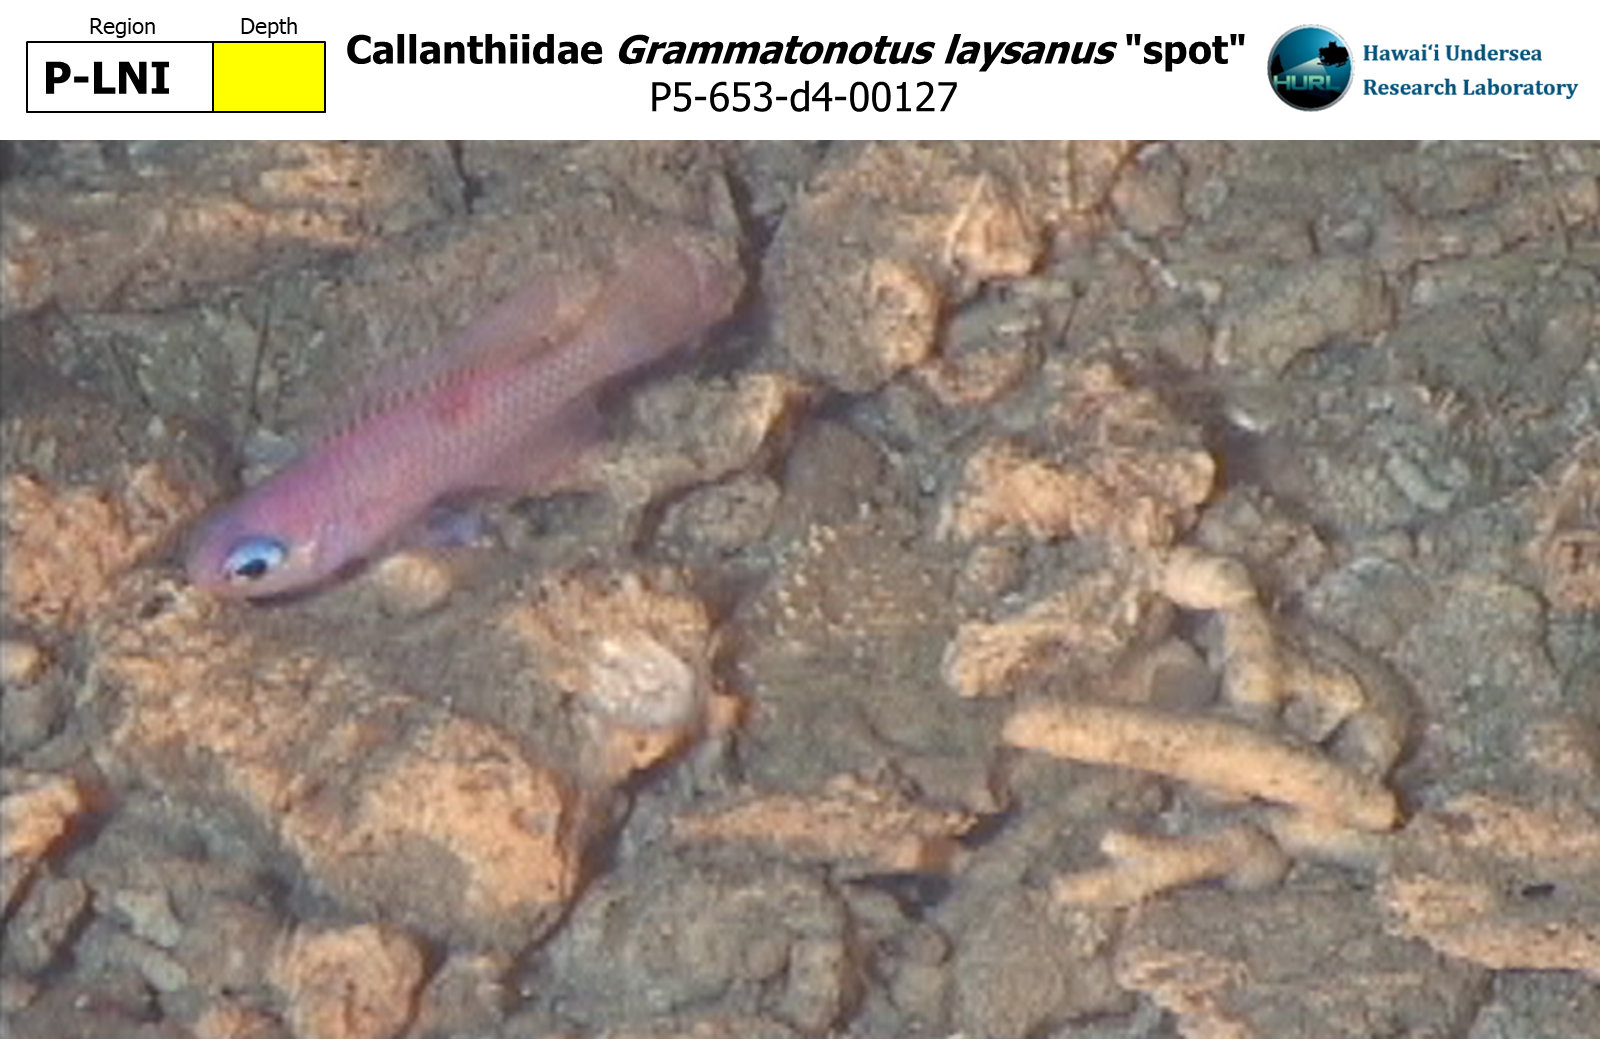 Grammatonotus laysanus "spot"